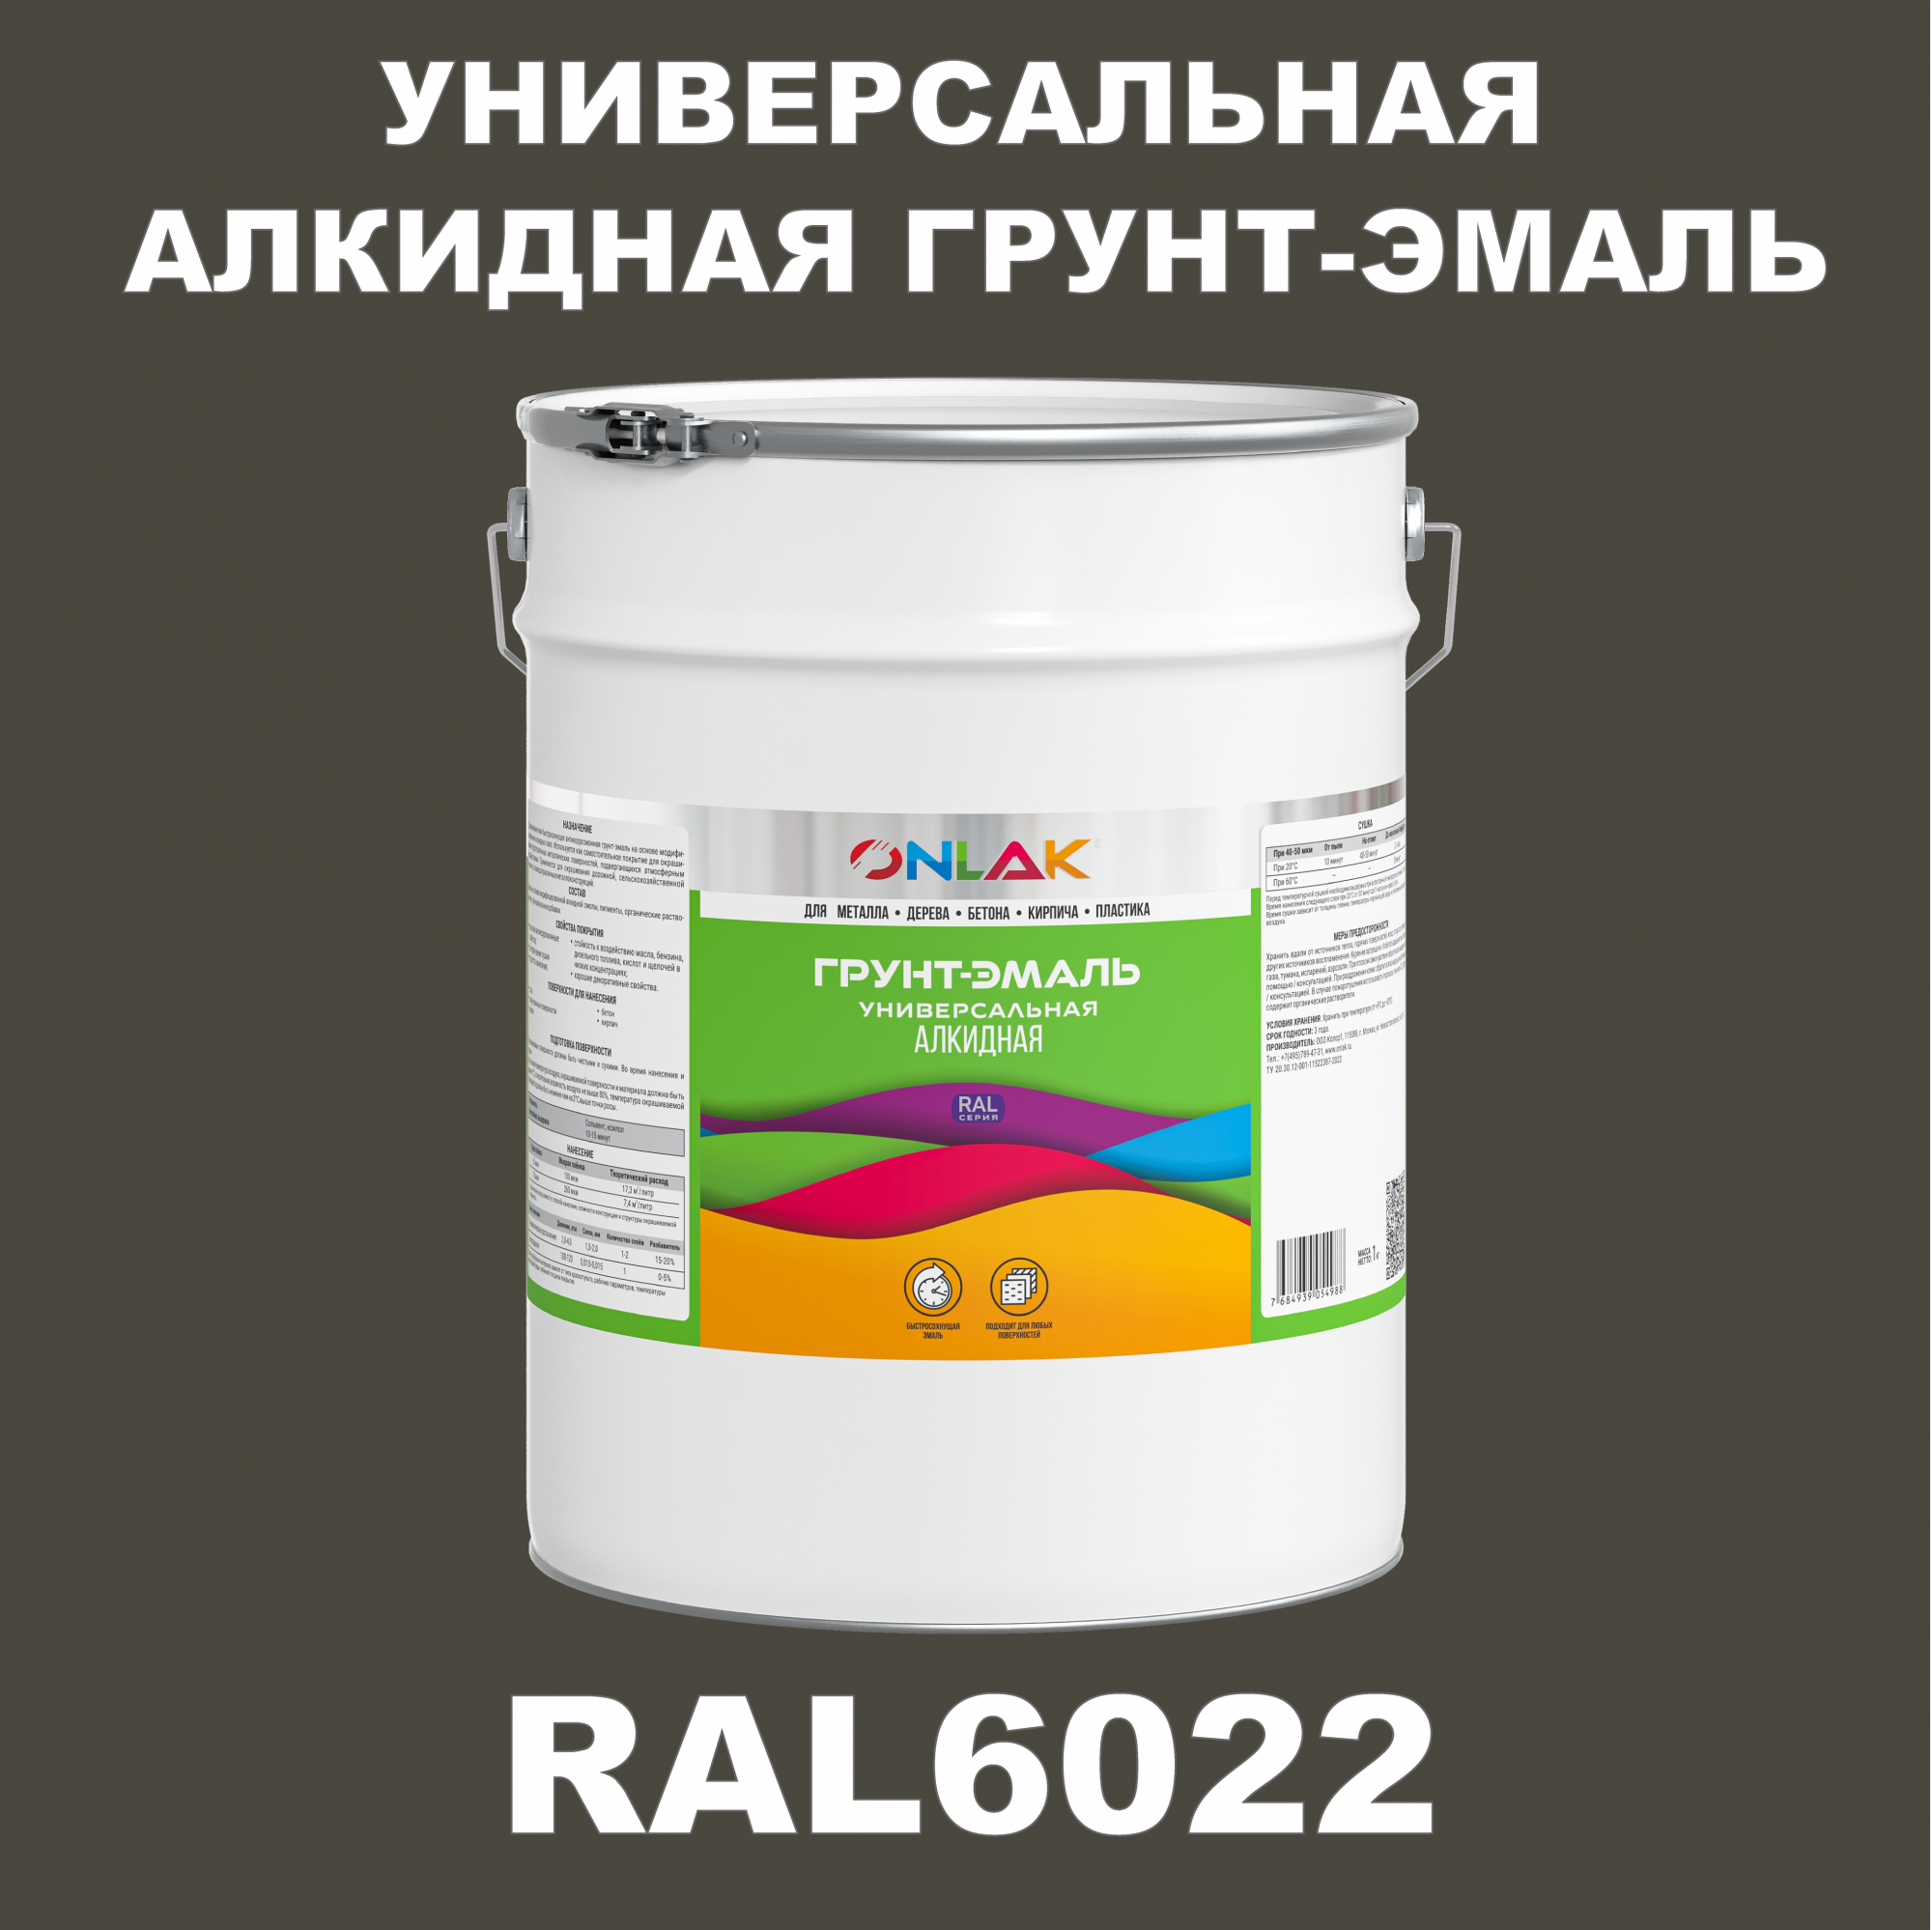 Грунт-эмаль ONLAK 1К RAL6022 антикоррозионная алкидная по металлу по ржавчине 20 кг грунт эмаль skladno по ржавчине алкидная желтая 1 8 кг